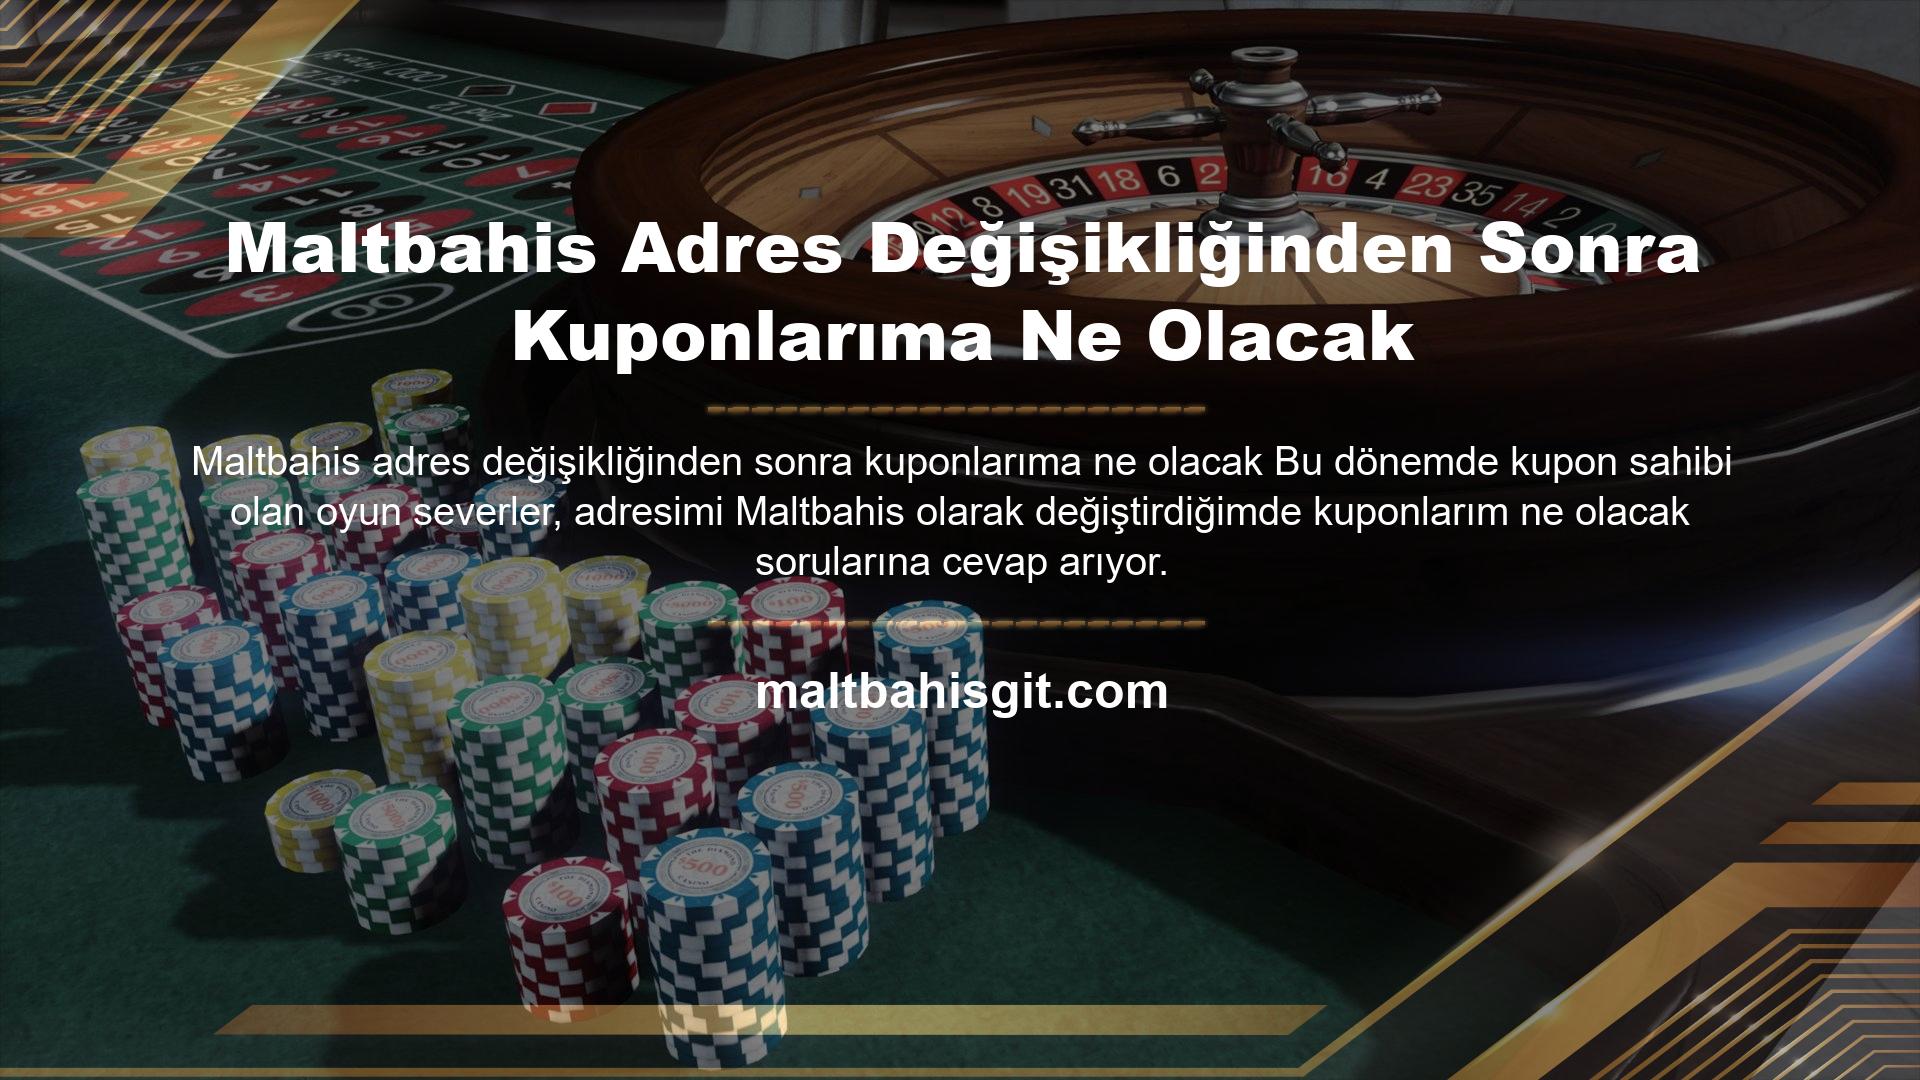 Bu kapsamda site, herhangi bir kazanç olması durumunda kuponların doğrudan Maltbahis hesabına aktarılacağını üyelere bildirir